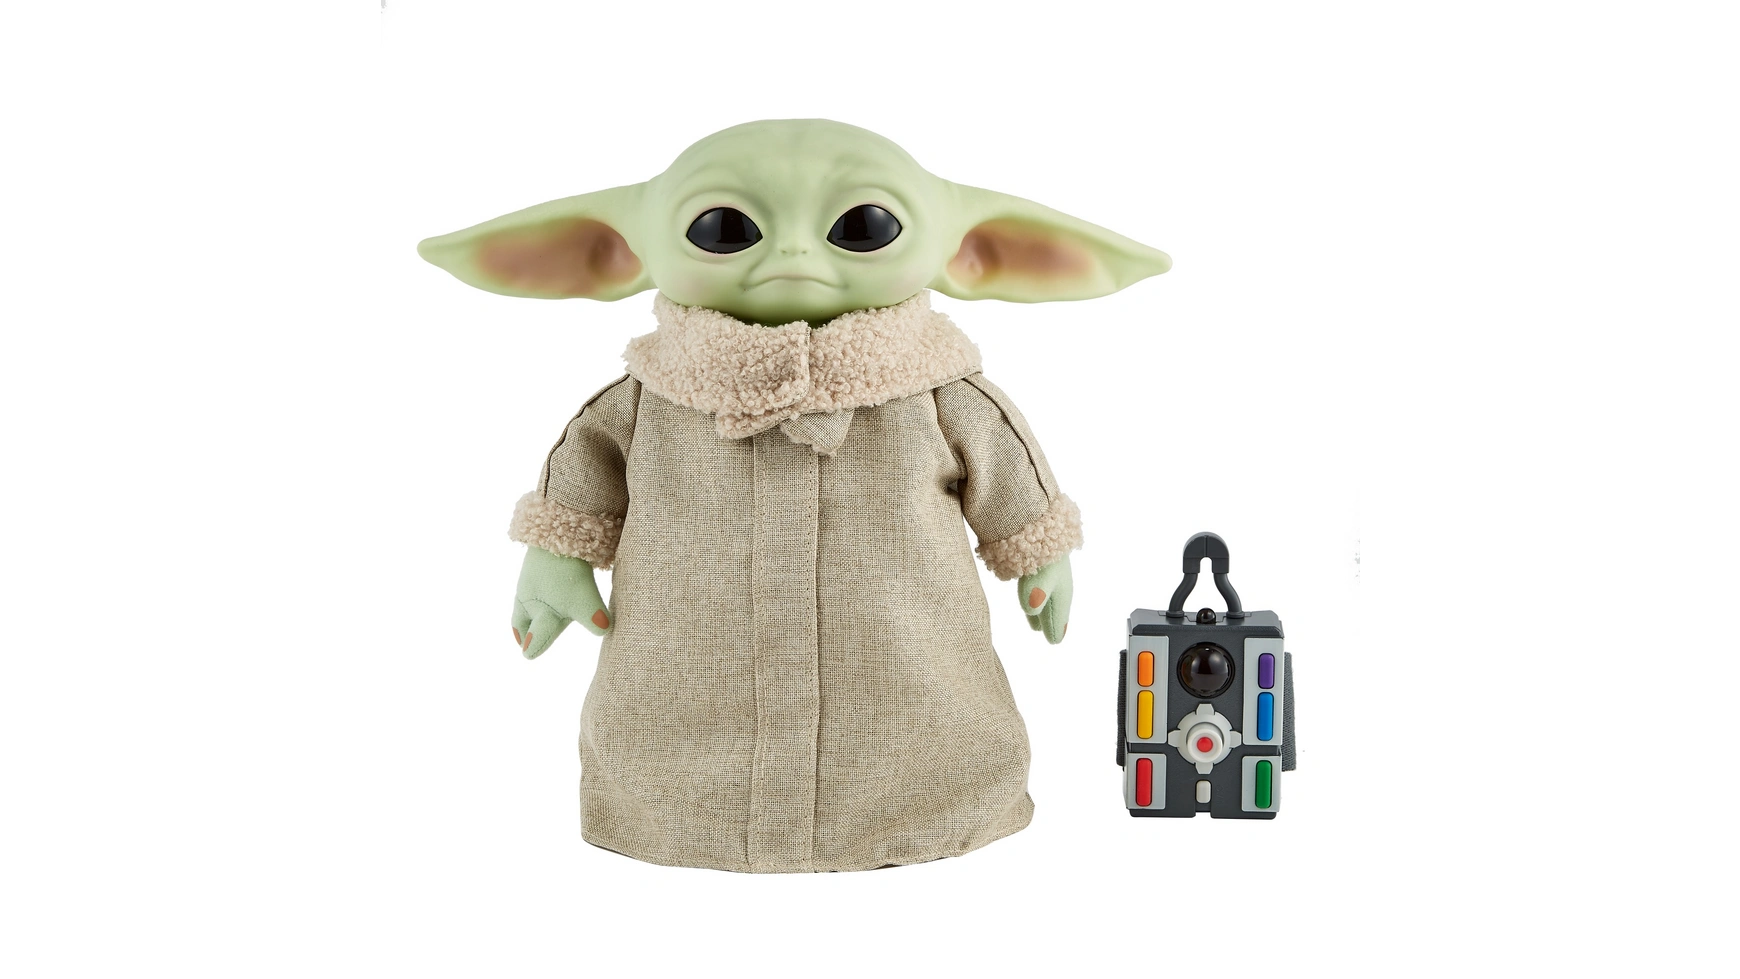 Функциональный плюш Disney Star Wars Mandalorian The Child Baby Yoda фигурка мандалорец 16 см сгибается в 13 местах